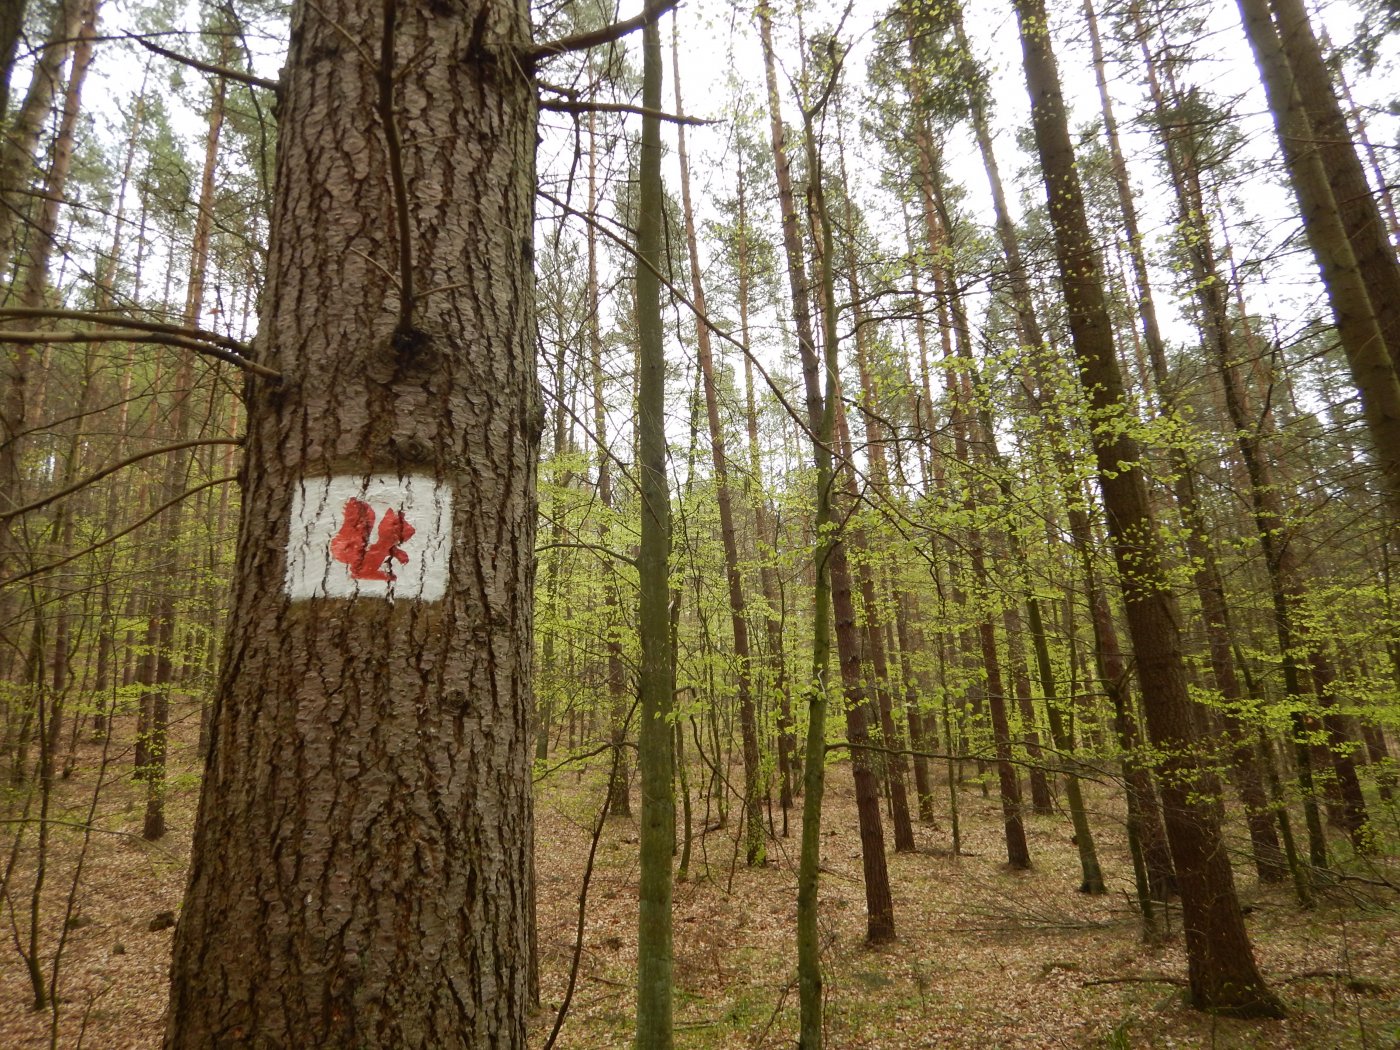 Szlak Wiewiórki oznaczenie szlaku na drzewie symbolem wiewiórki